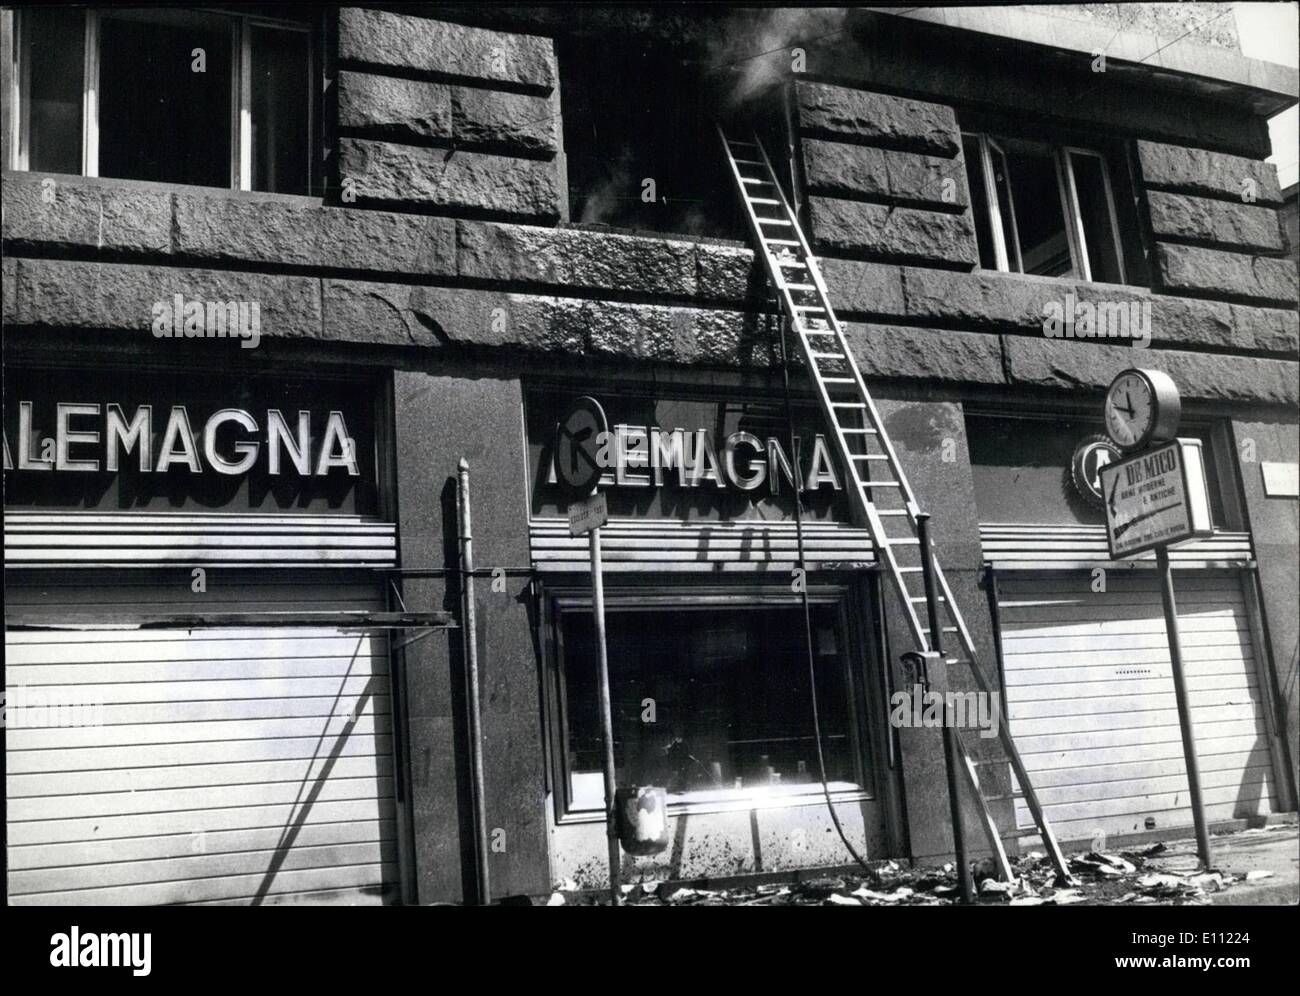 4. April 1975 - Bürgerkrieg zwischen links und rechts: Nach der Ermordung eines 18-Year-Old '' Leftish'' jungen seitens ebenso junge Faschisten, Milan linke Elemente heute begann die große Rache. Eine Bombe gesprengt in den Büros der Moilan der bekannten römischen faschistischen wöchentliche '' Lo Speechi'' (The Mirror "). Viele Menschen wurden verletzt, Feuer-Brigademen eilte zu der Szene, aber es war zu spät. die linke auch schleudern; Ed Brandbomben Bomben gegen eine Cafeteria-Bar. und hier auch Milan Feuerwehr Männer mussten viel arbeiten, das Schlimmste verhindern Stockfoto